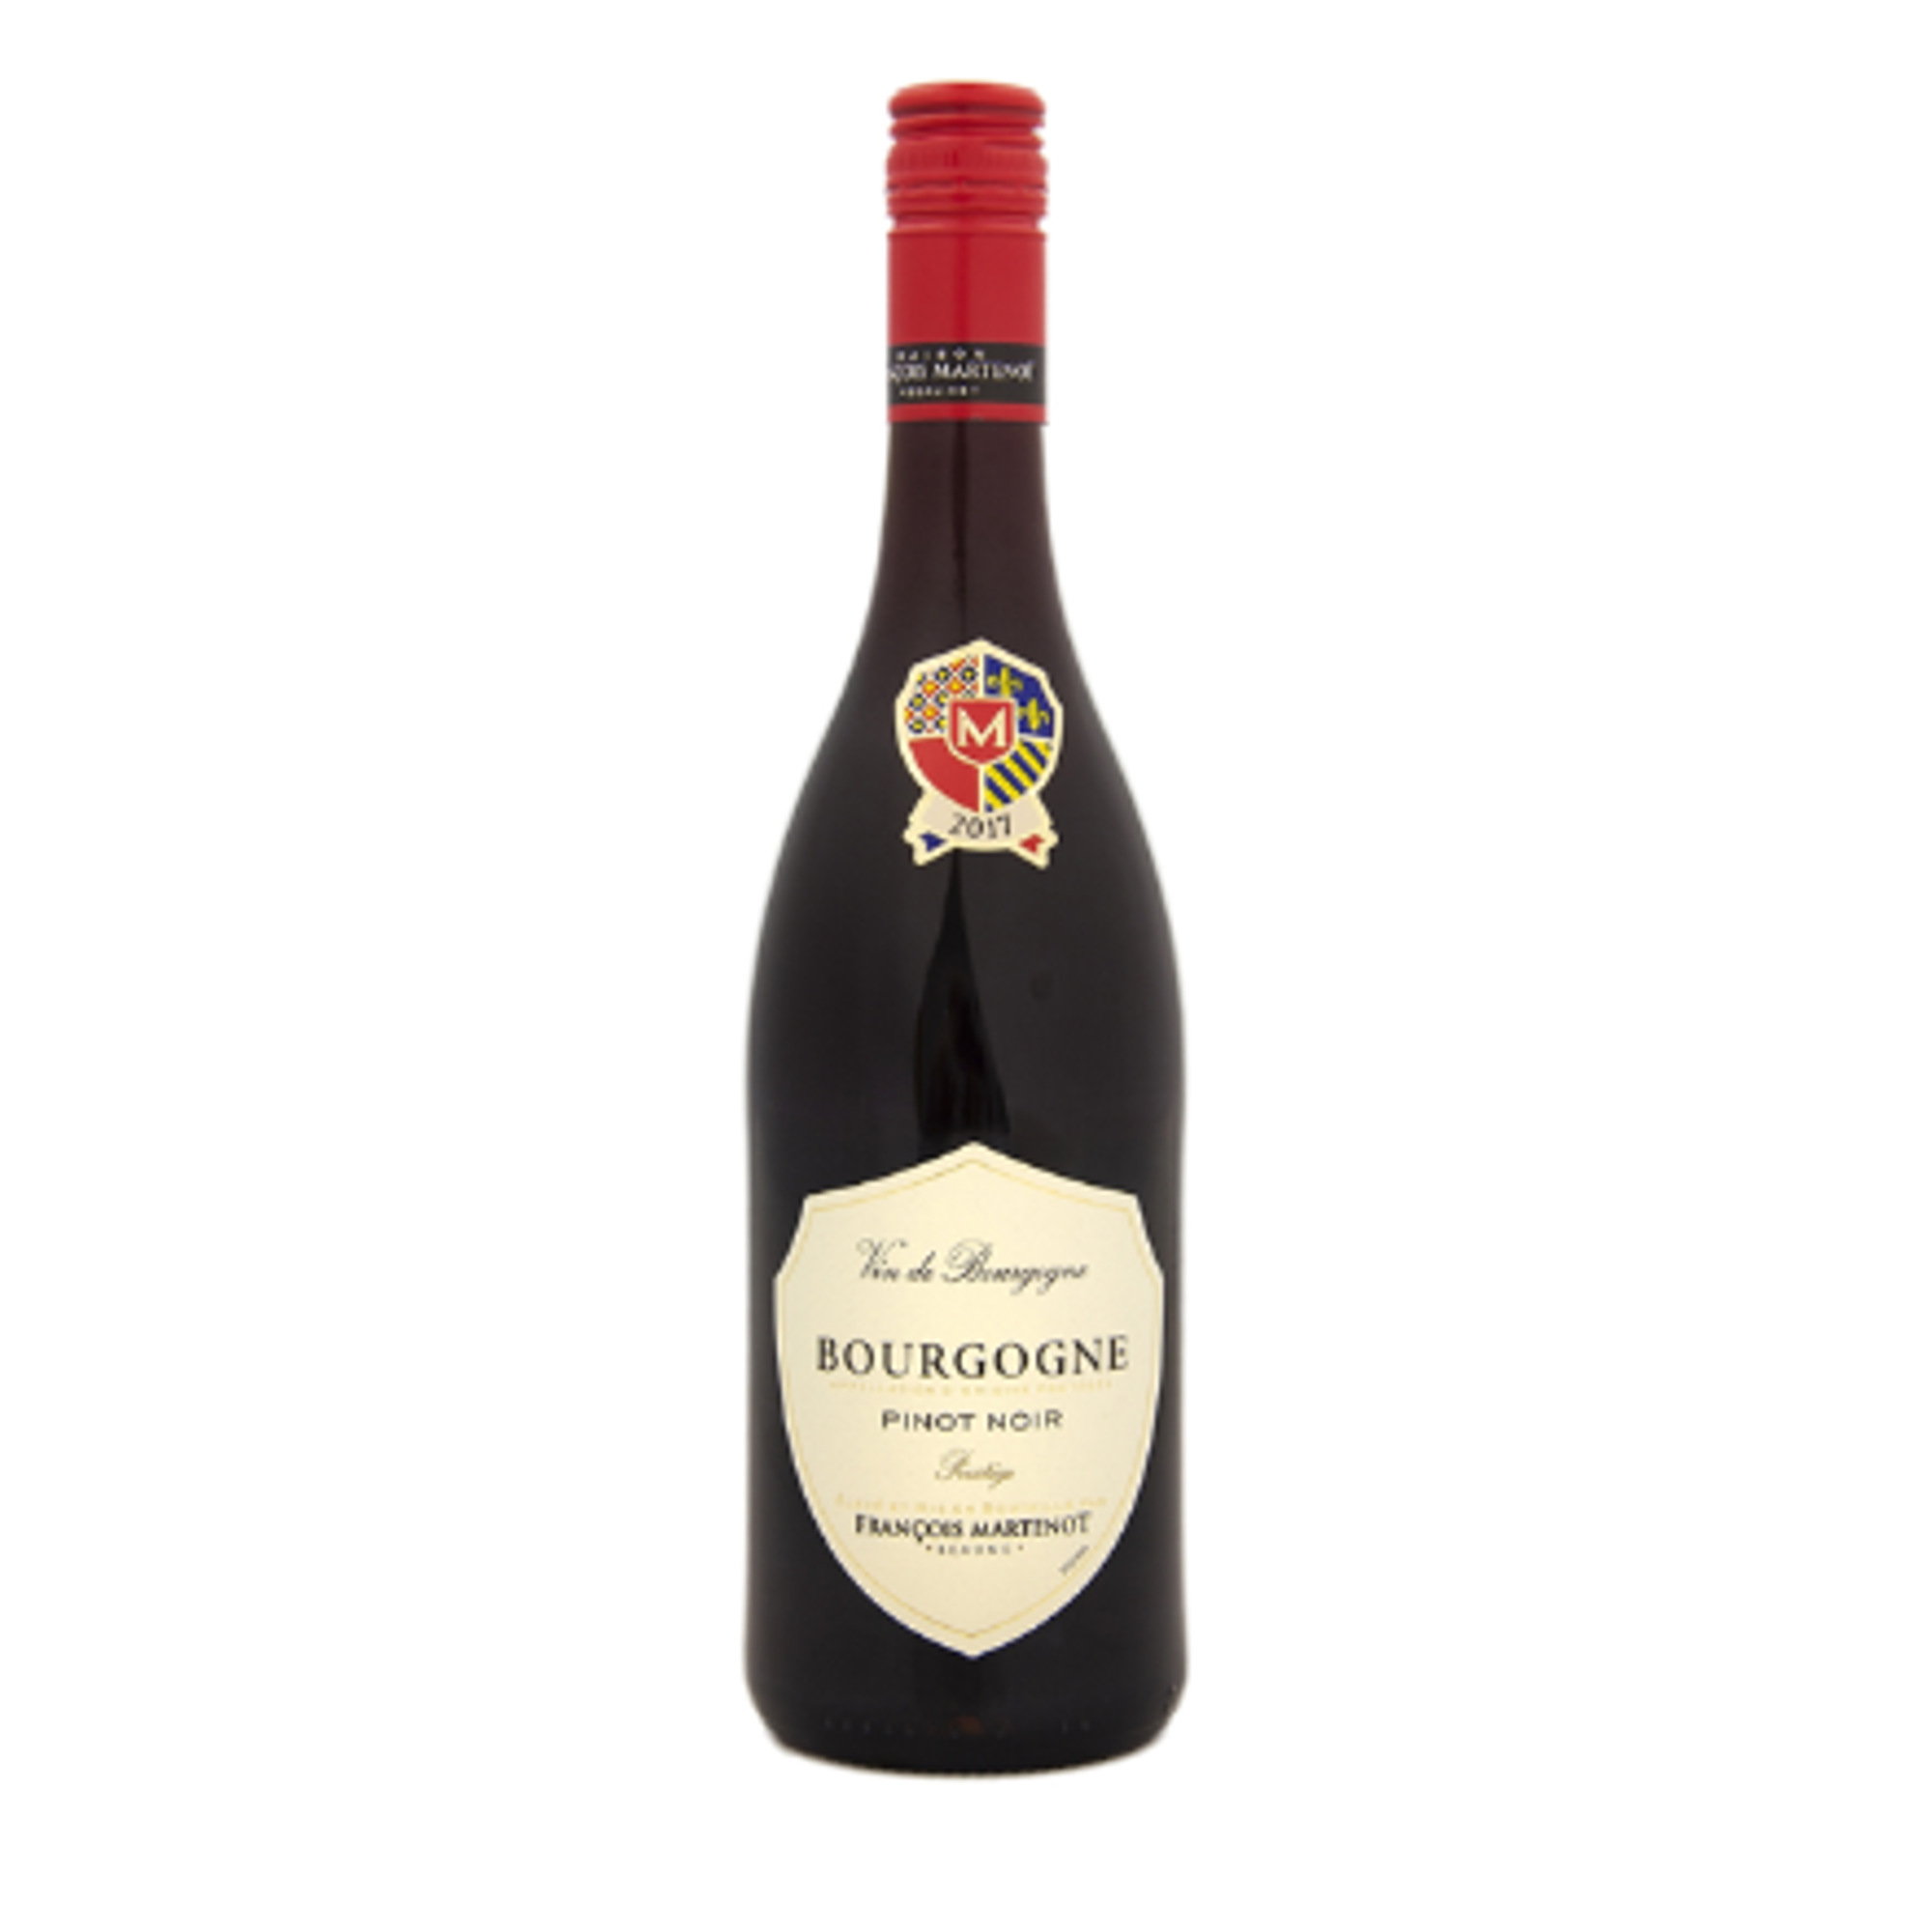 Mynd Francois Martenot Bourgogne Pinot Noir 